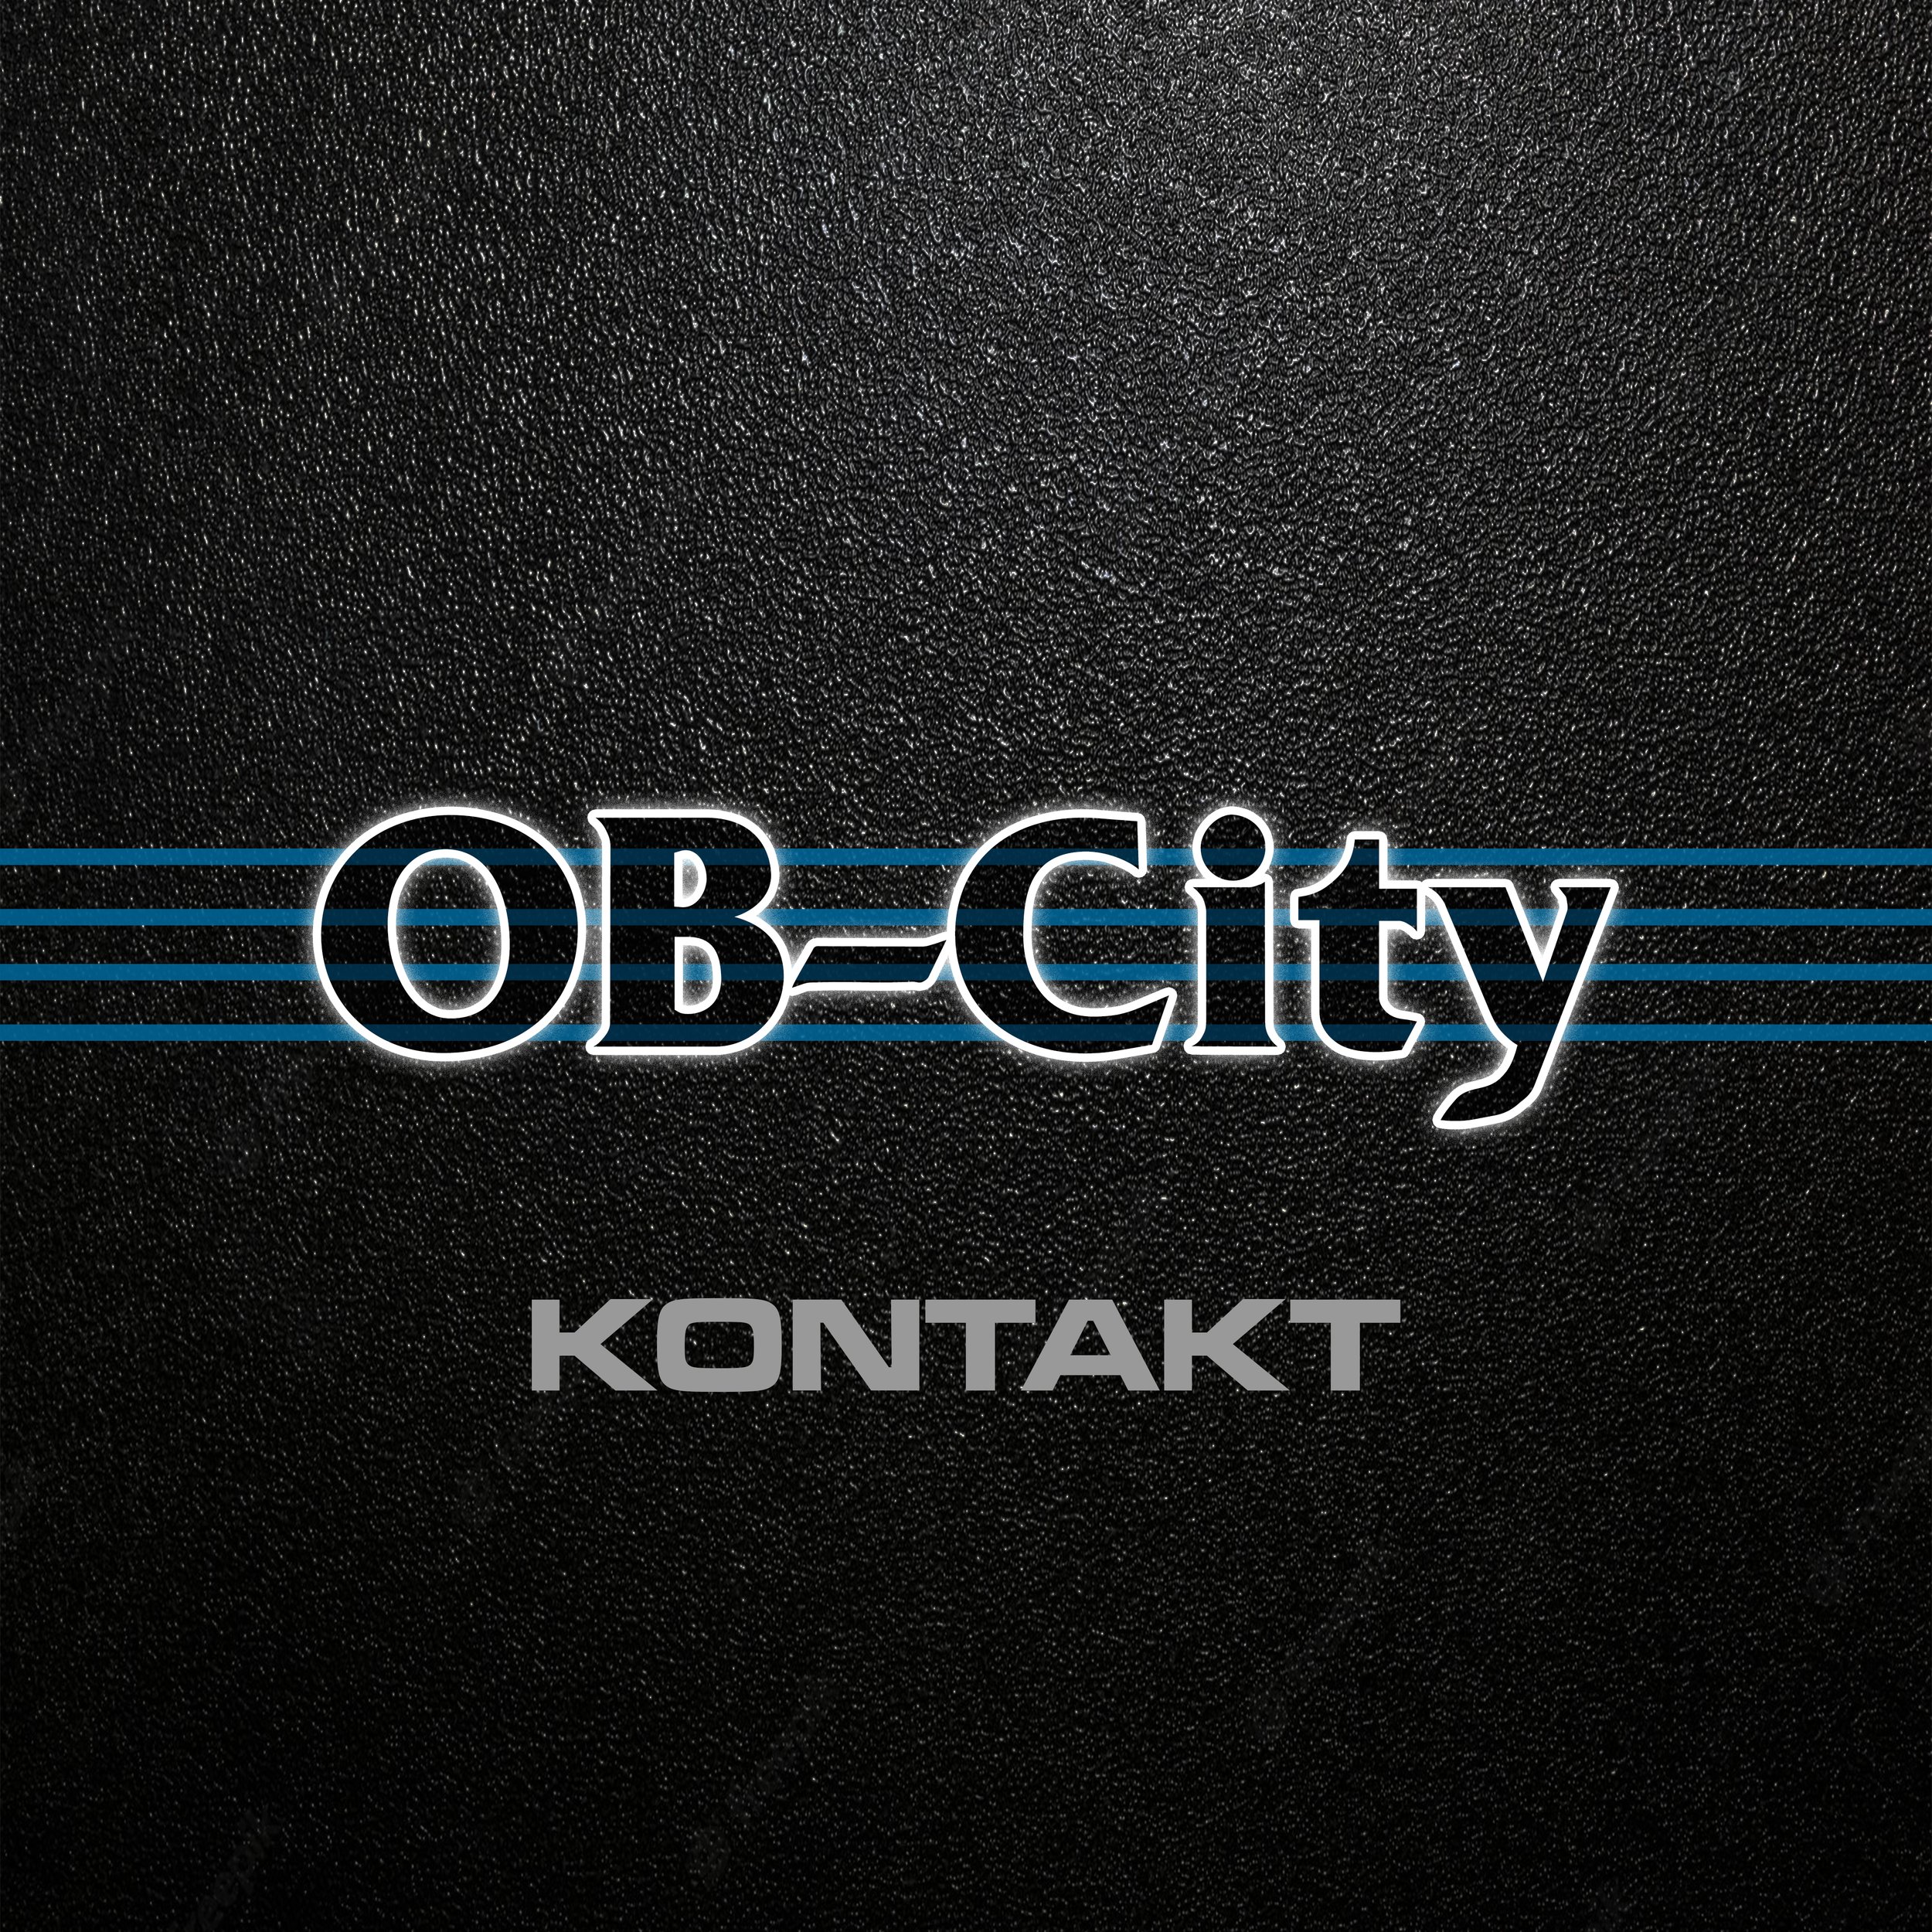 OB-City Kontakt Logo.jpg